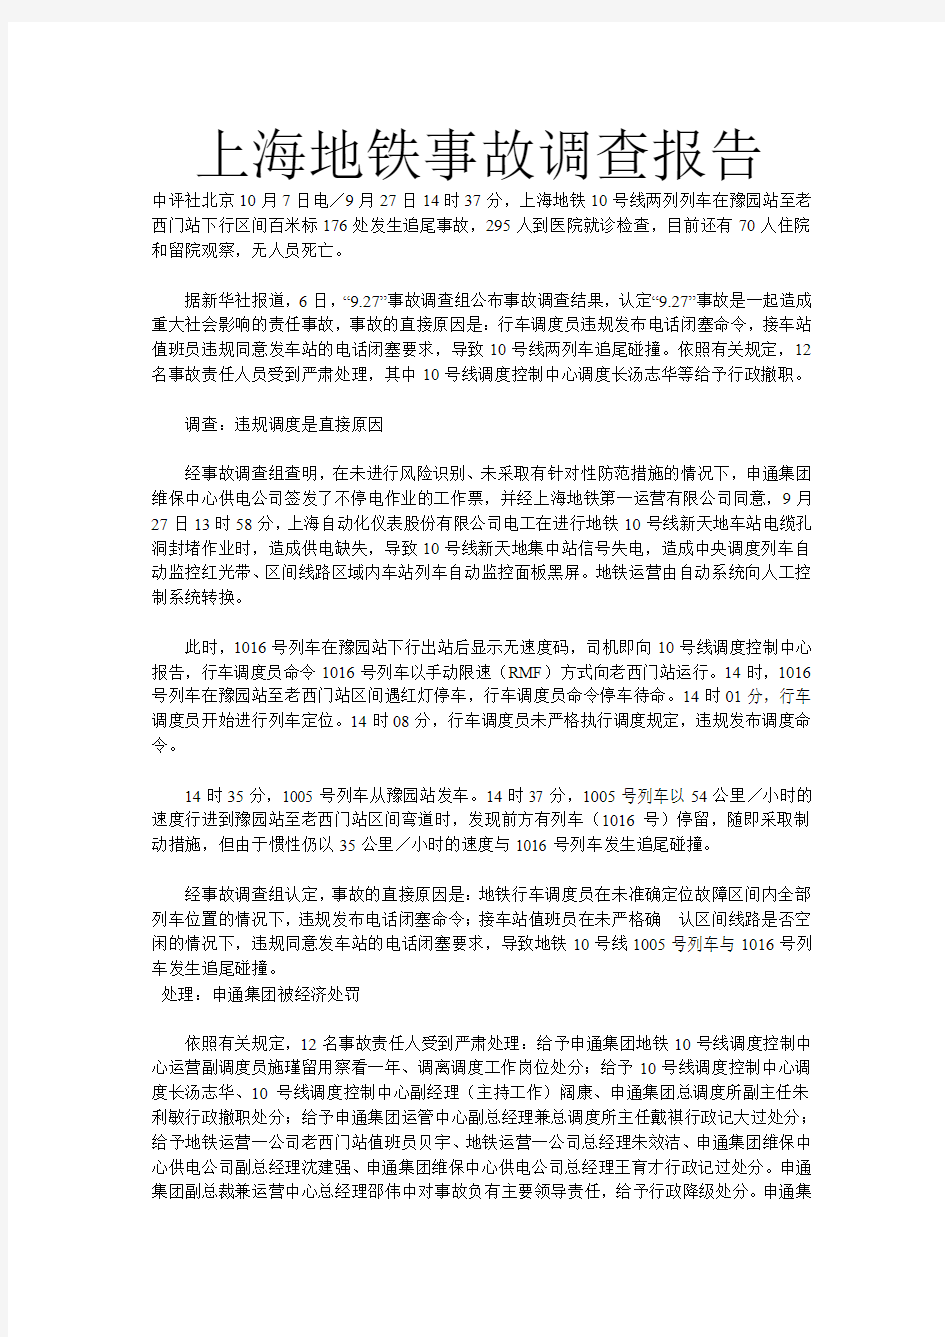 上海地铁事故调查报告